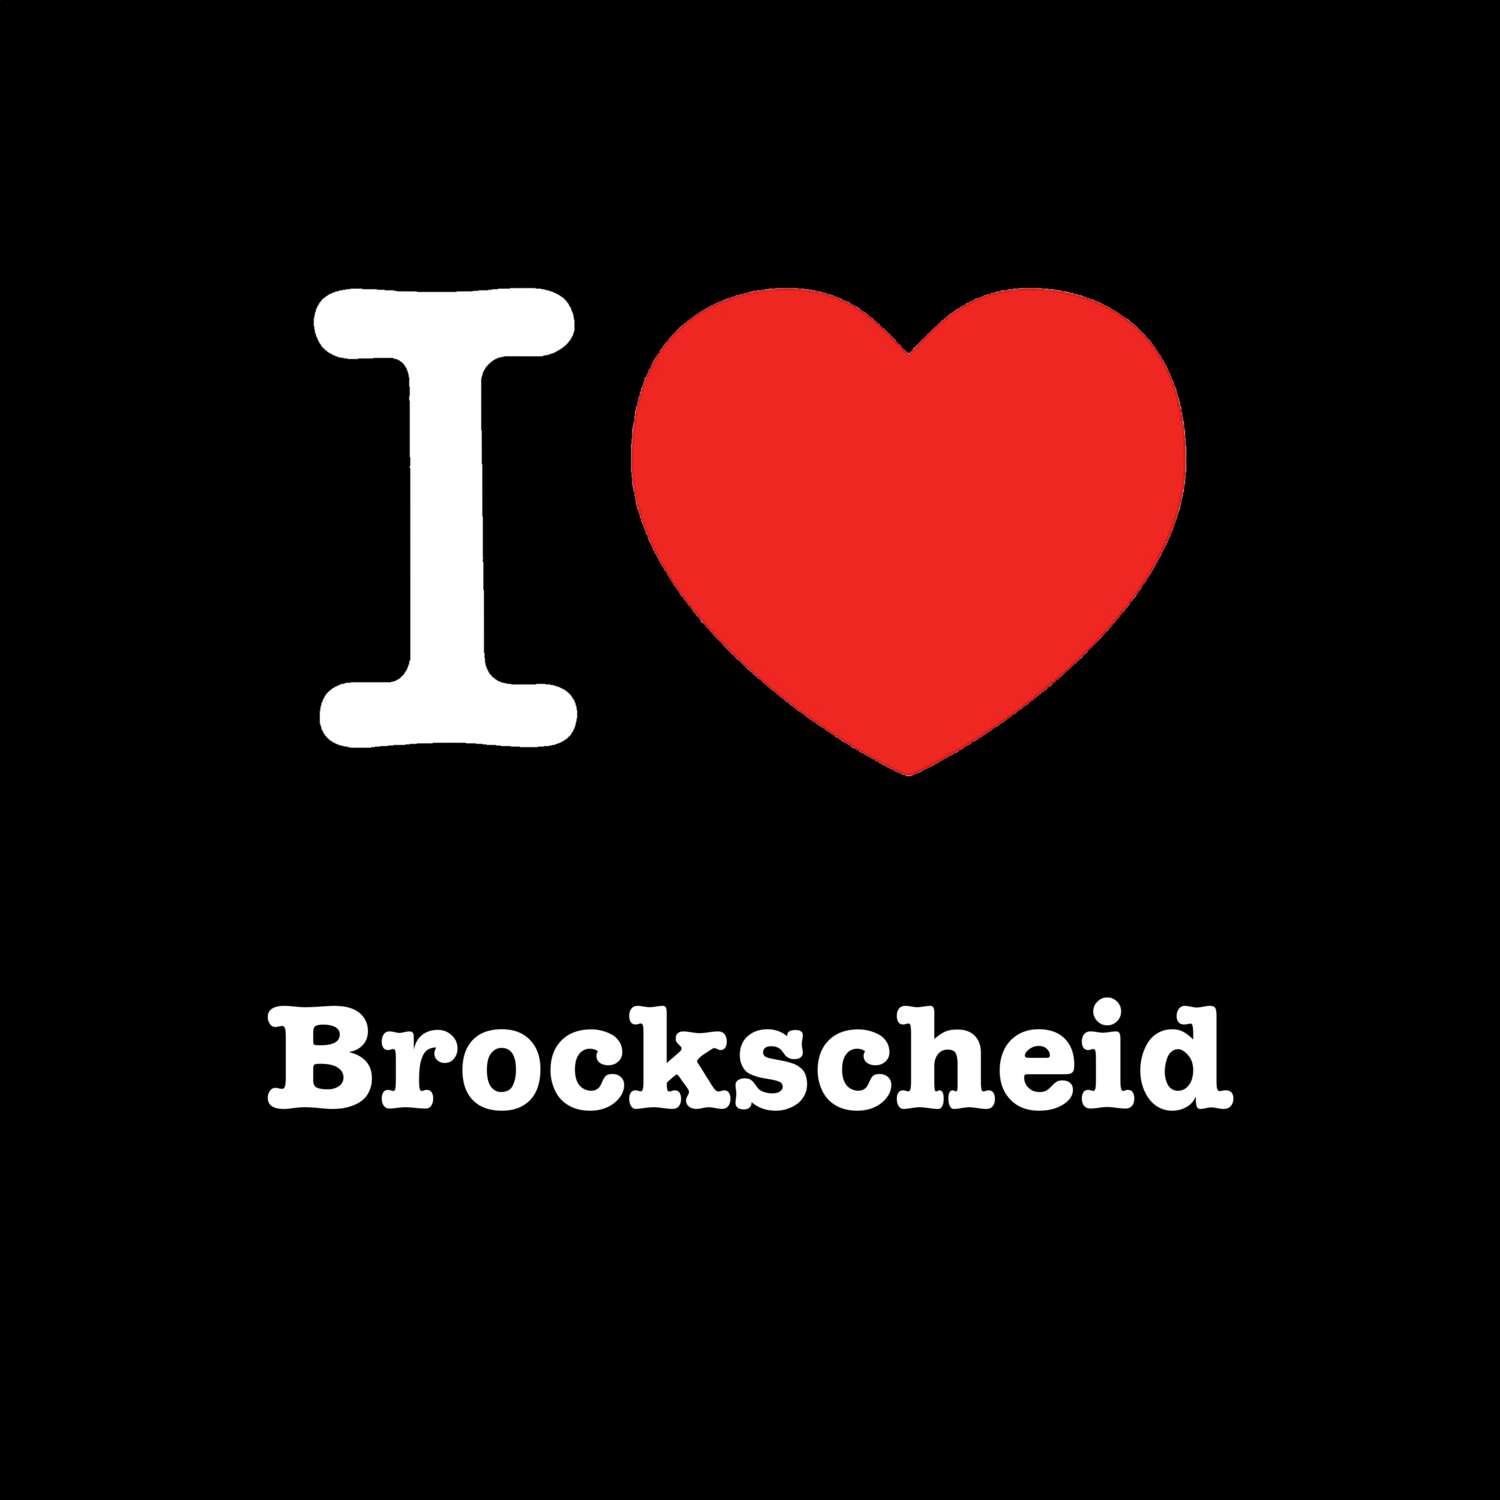 Brockscheid T-Shirt »I love«